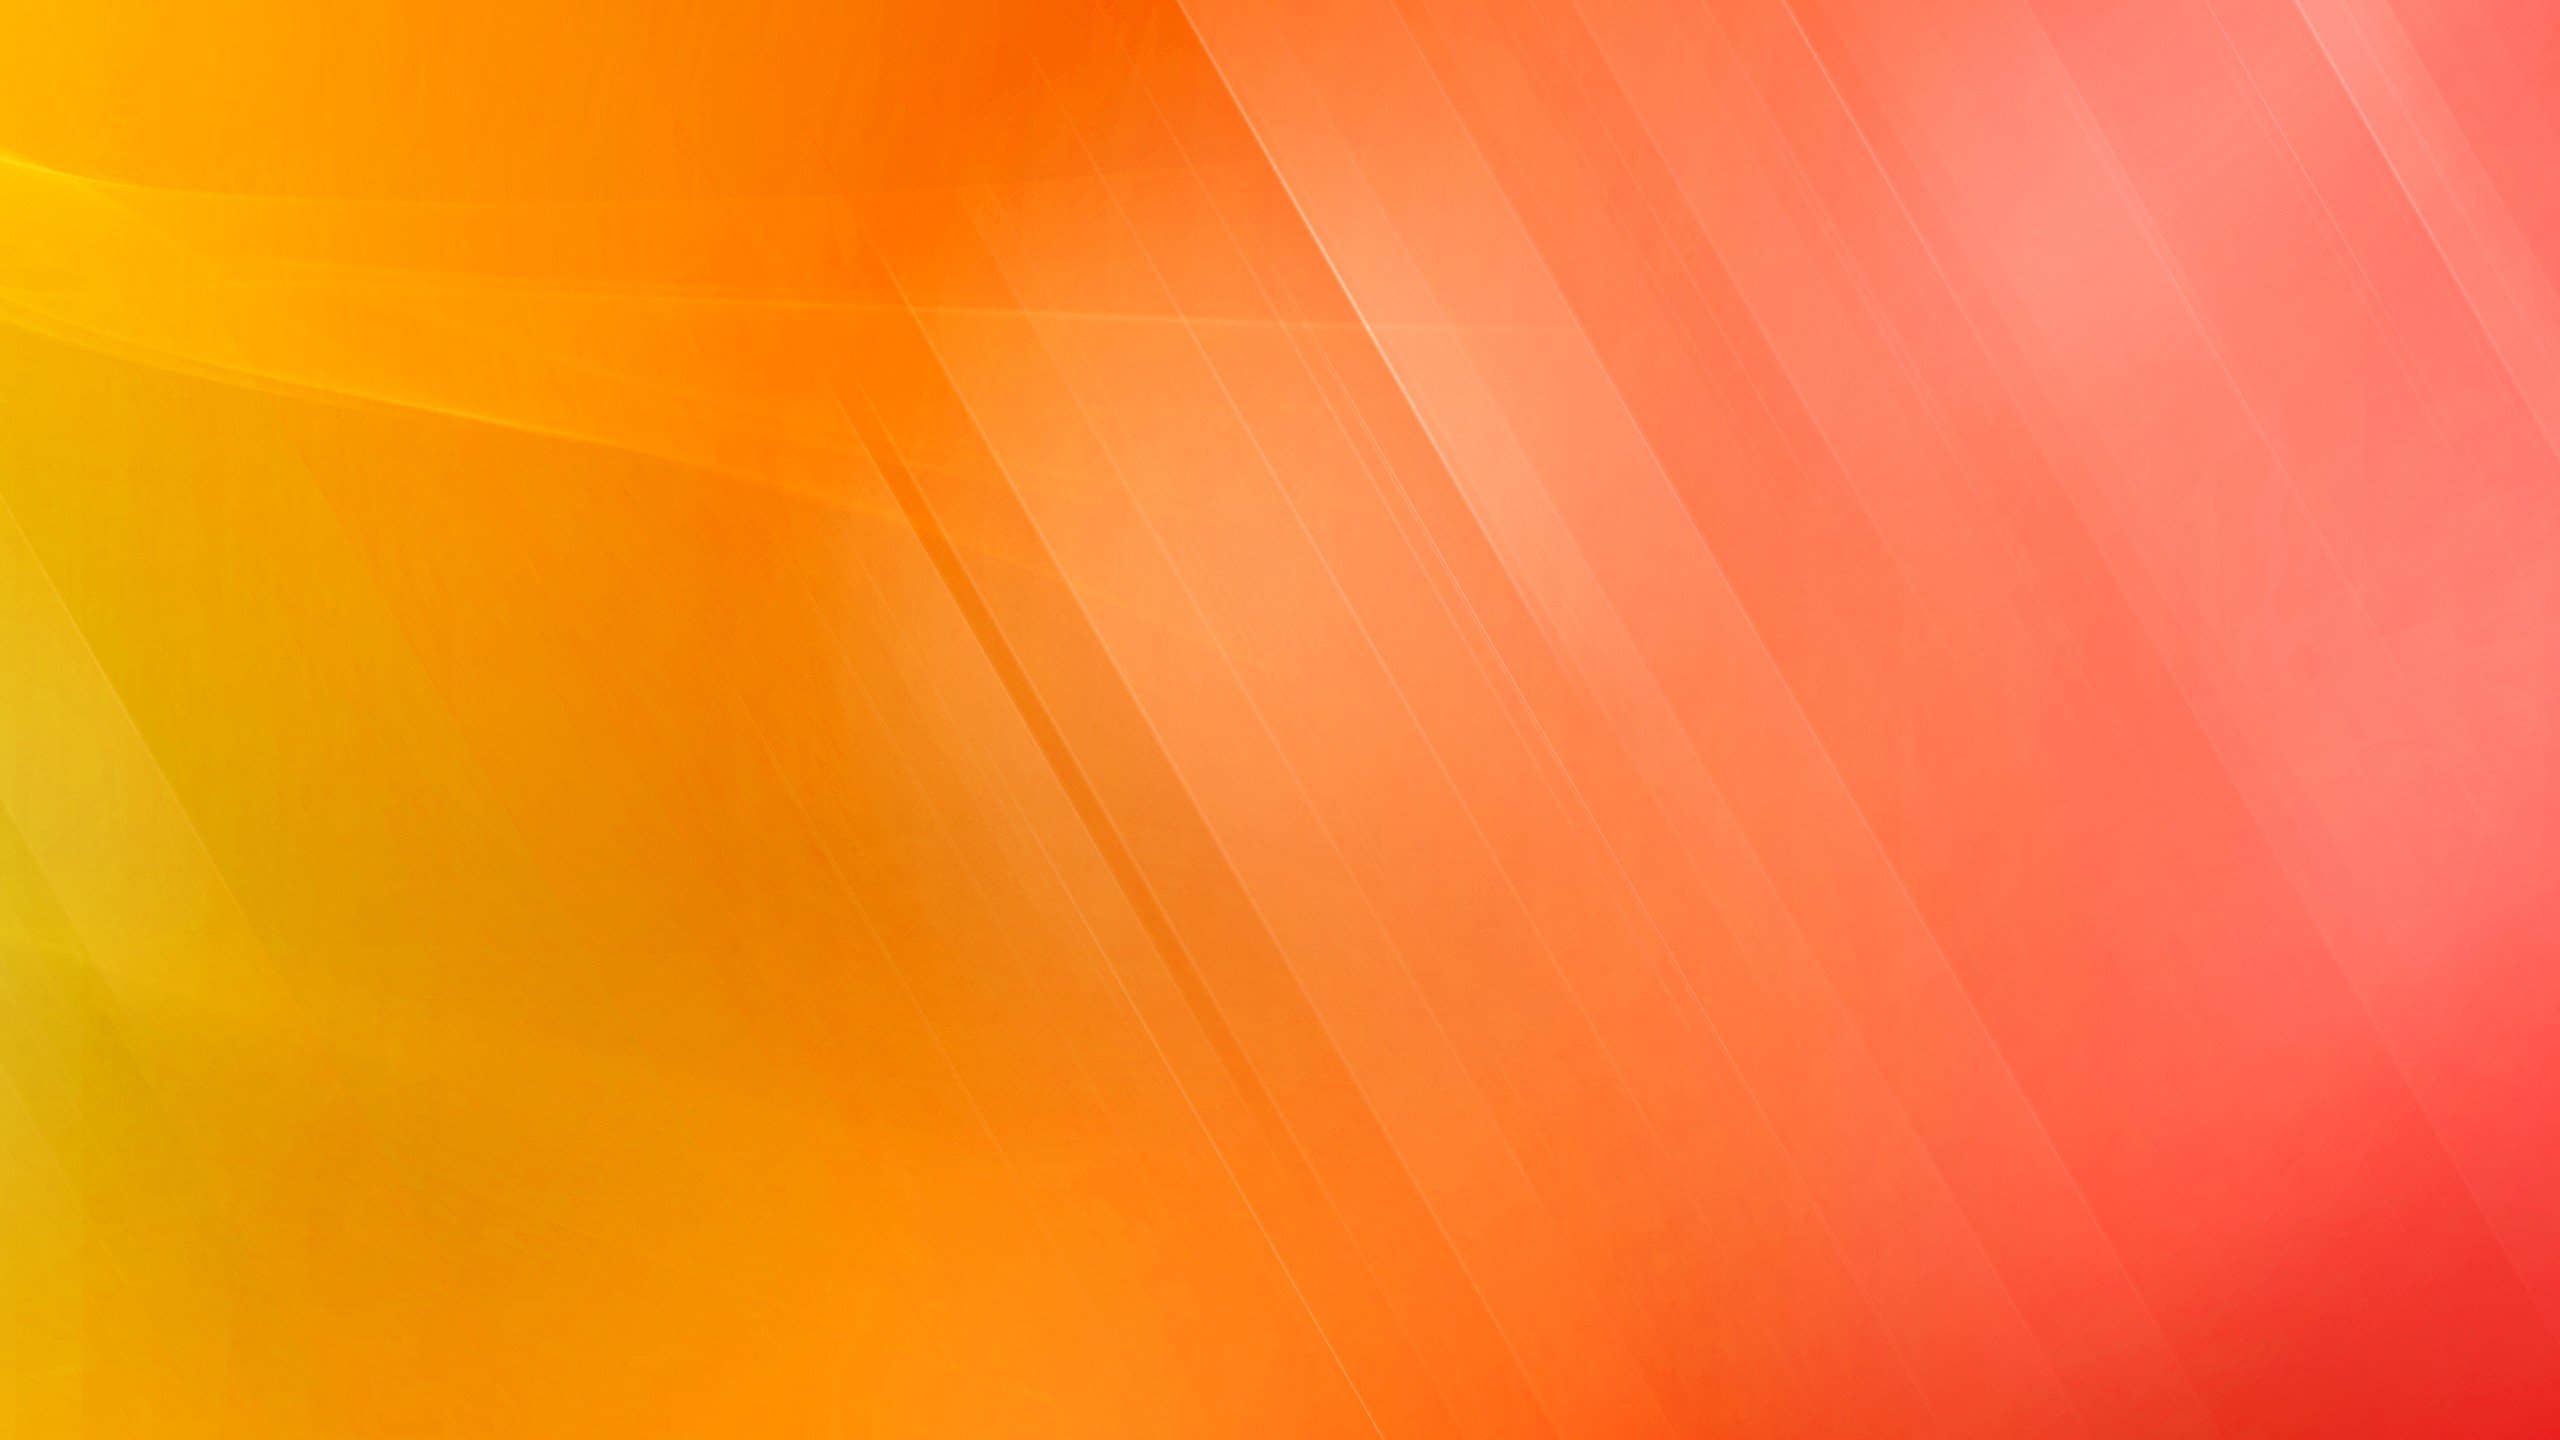 Fondos de pantalla Lineas con fondo degradado amarillo, naranja y rosa